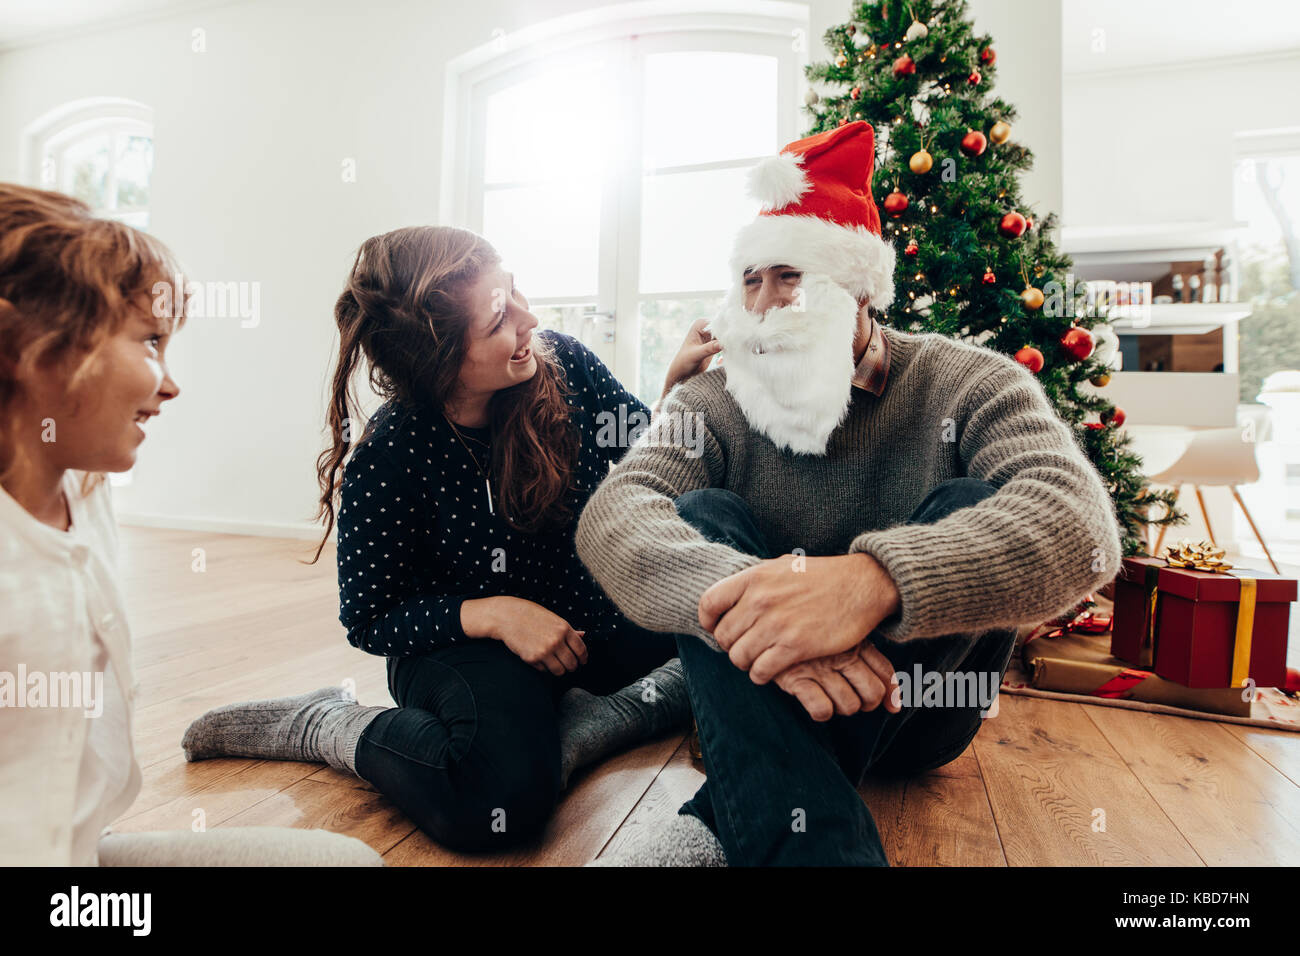 Famiglia festeggiano il Natale a casa con albero di Natale e regali. Donna e bambino guardando l uomo con Santa il cappello e la barba. Foto Stock